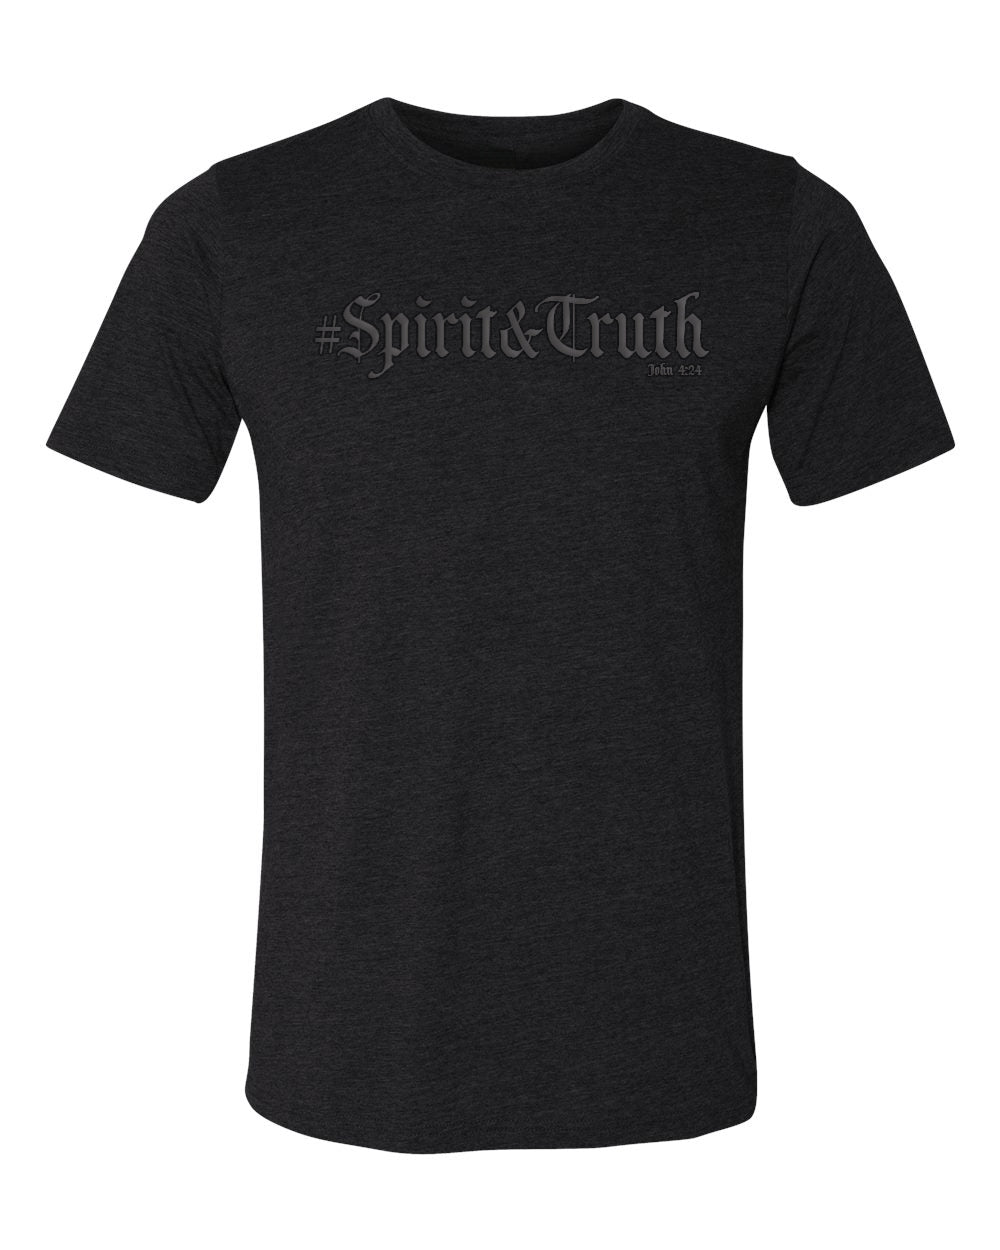 Spirit&Truth - Faith Defines Us